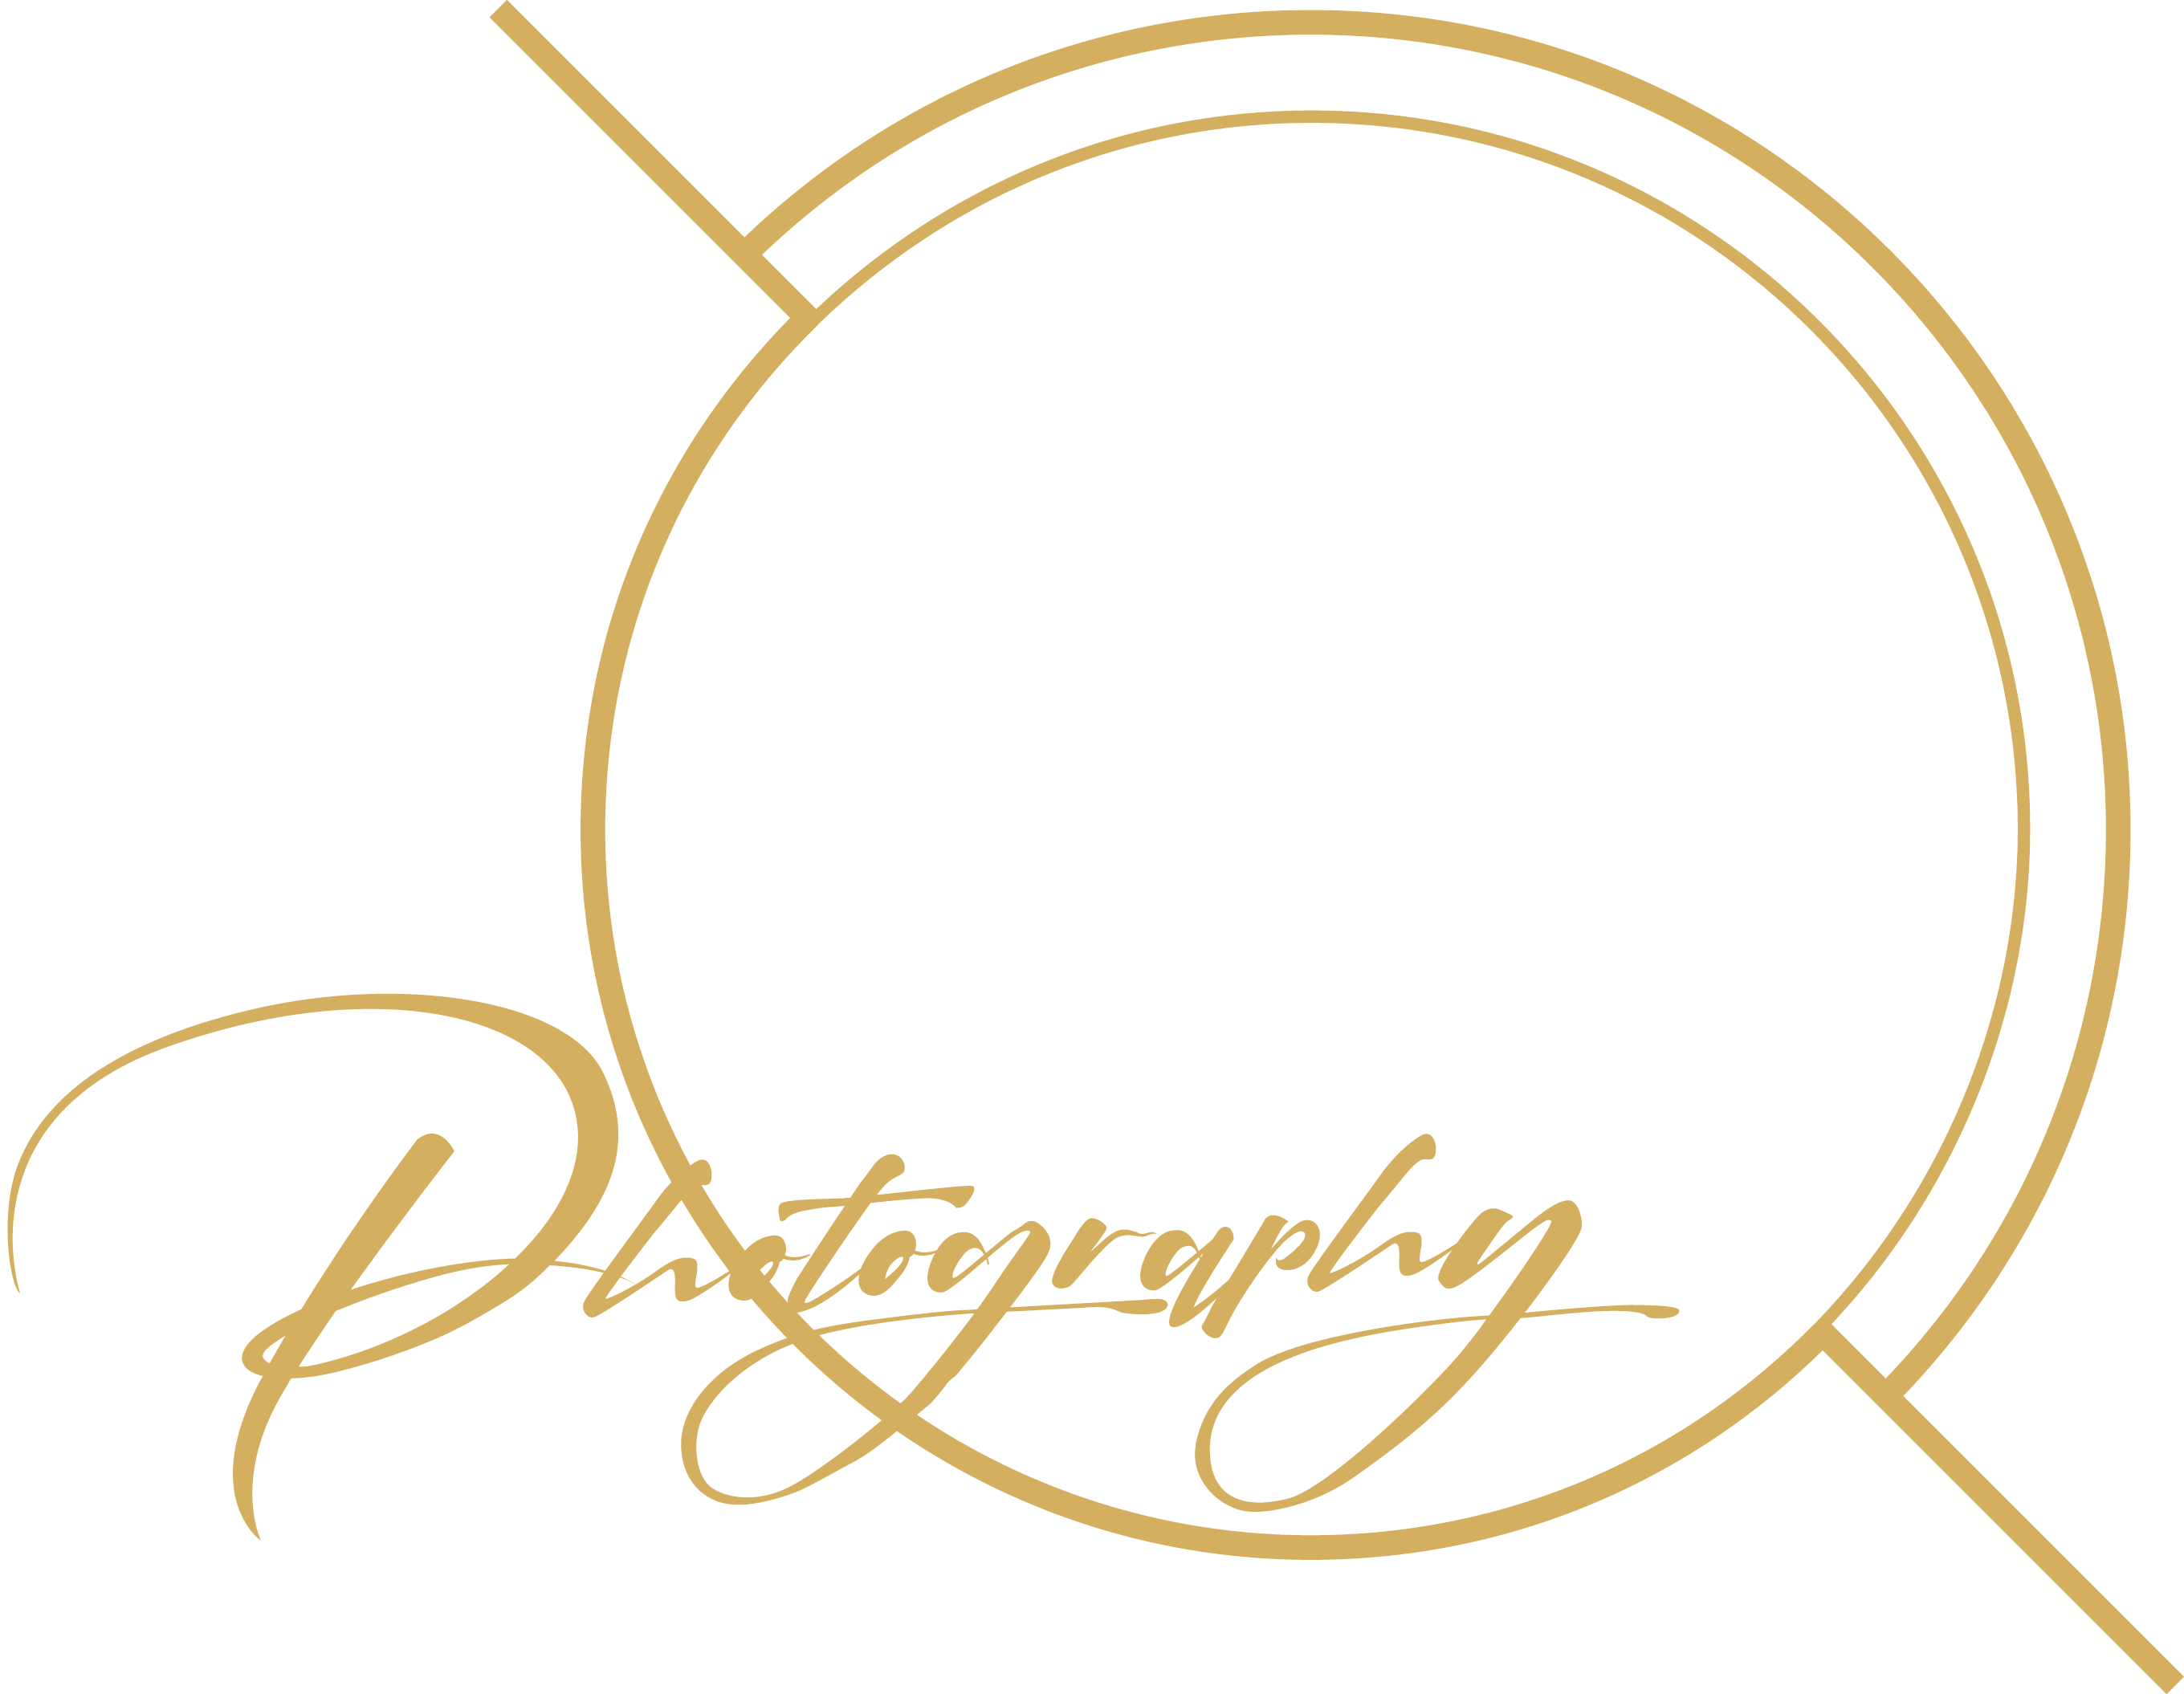 DG Photography